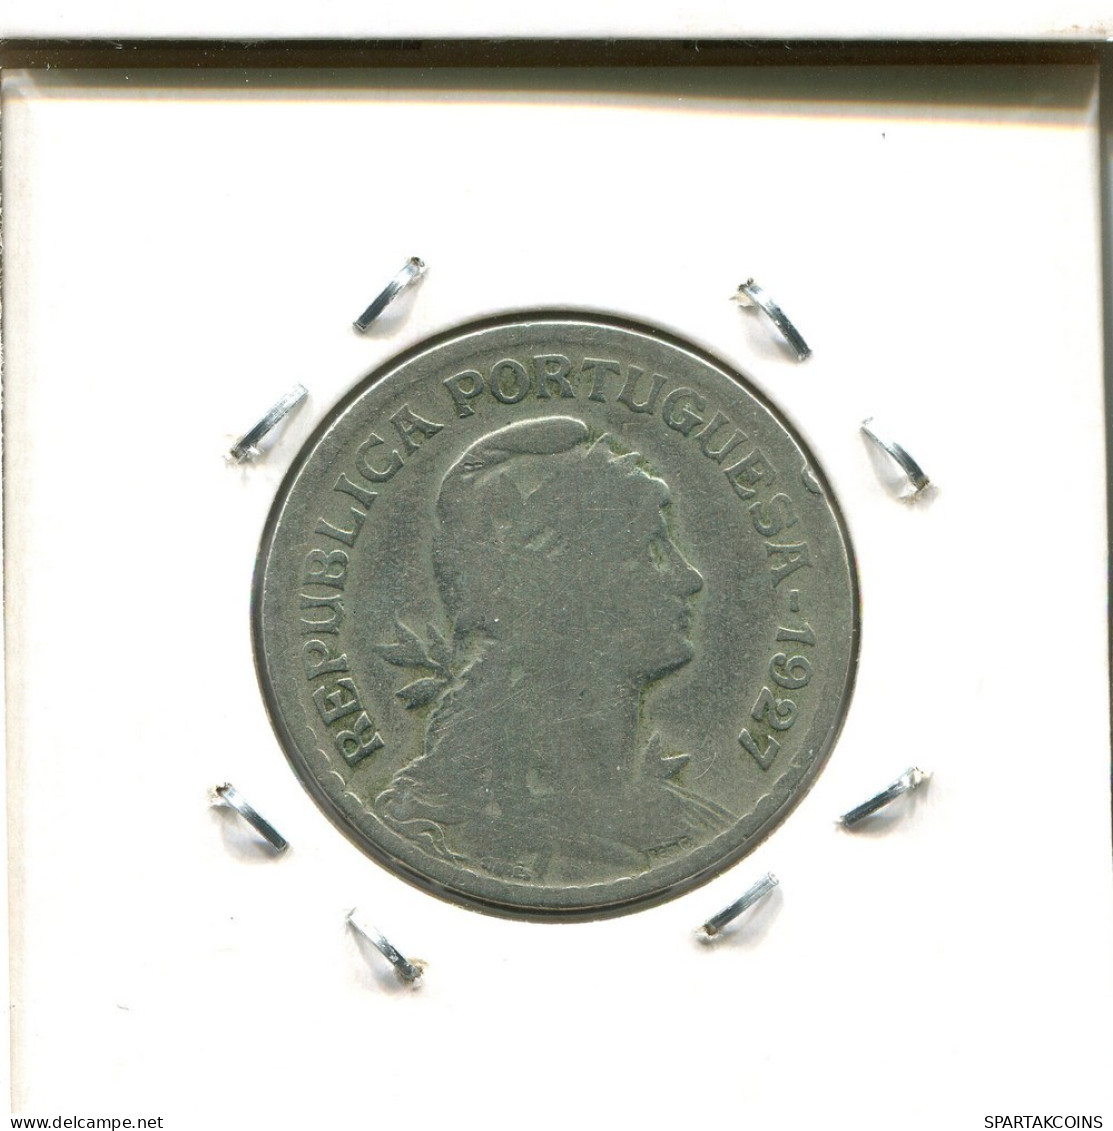 1 ESCUDO 1927 PORTUGAL Coin #AT318.U.A - Portugal